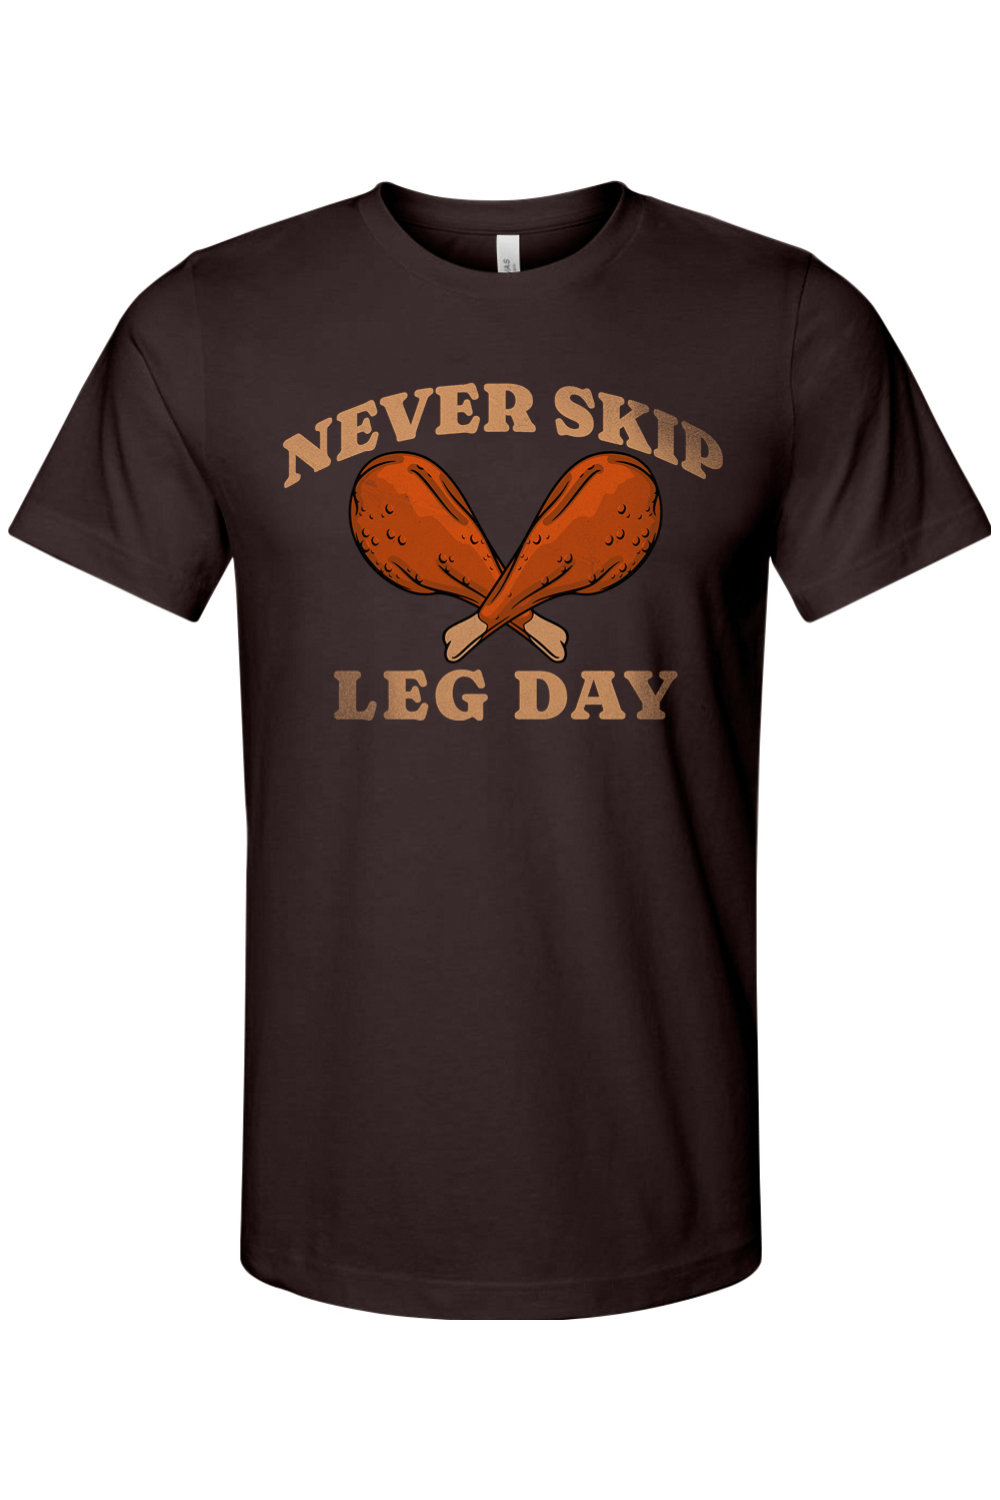 Never Skip Leg Day - Yinzylvania